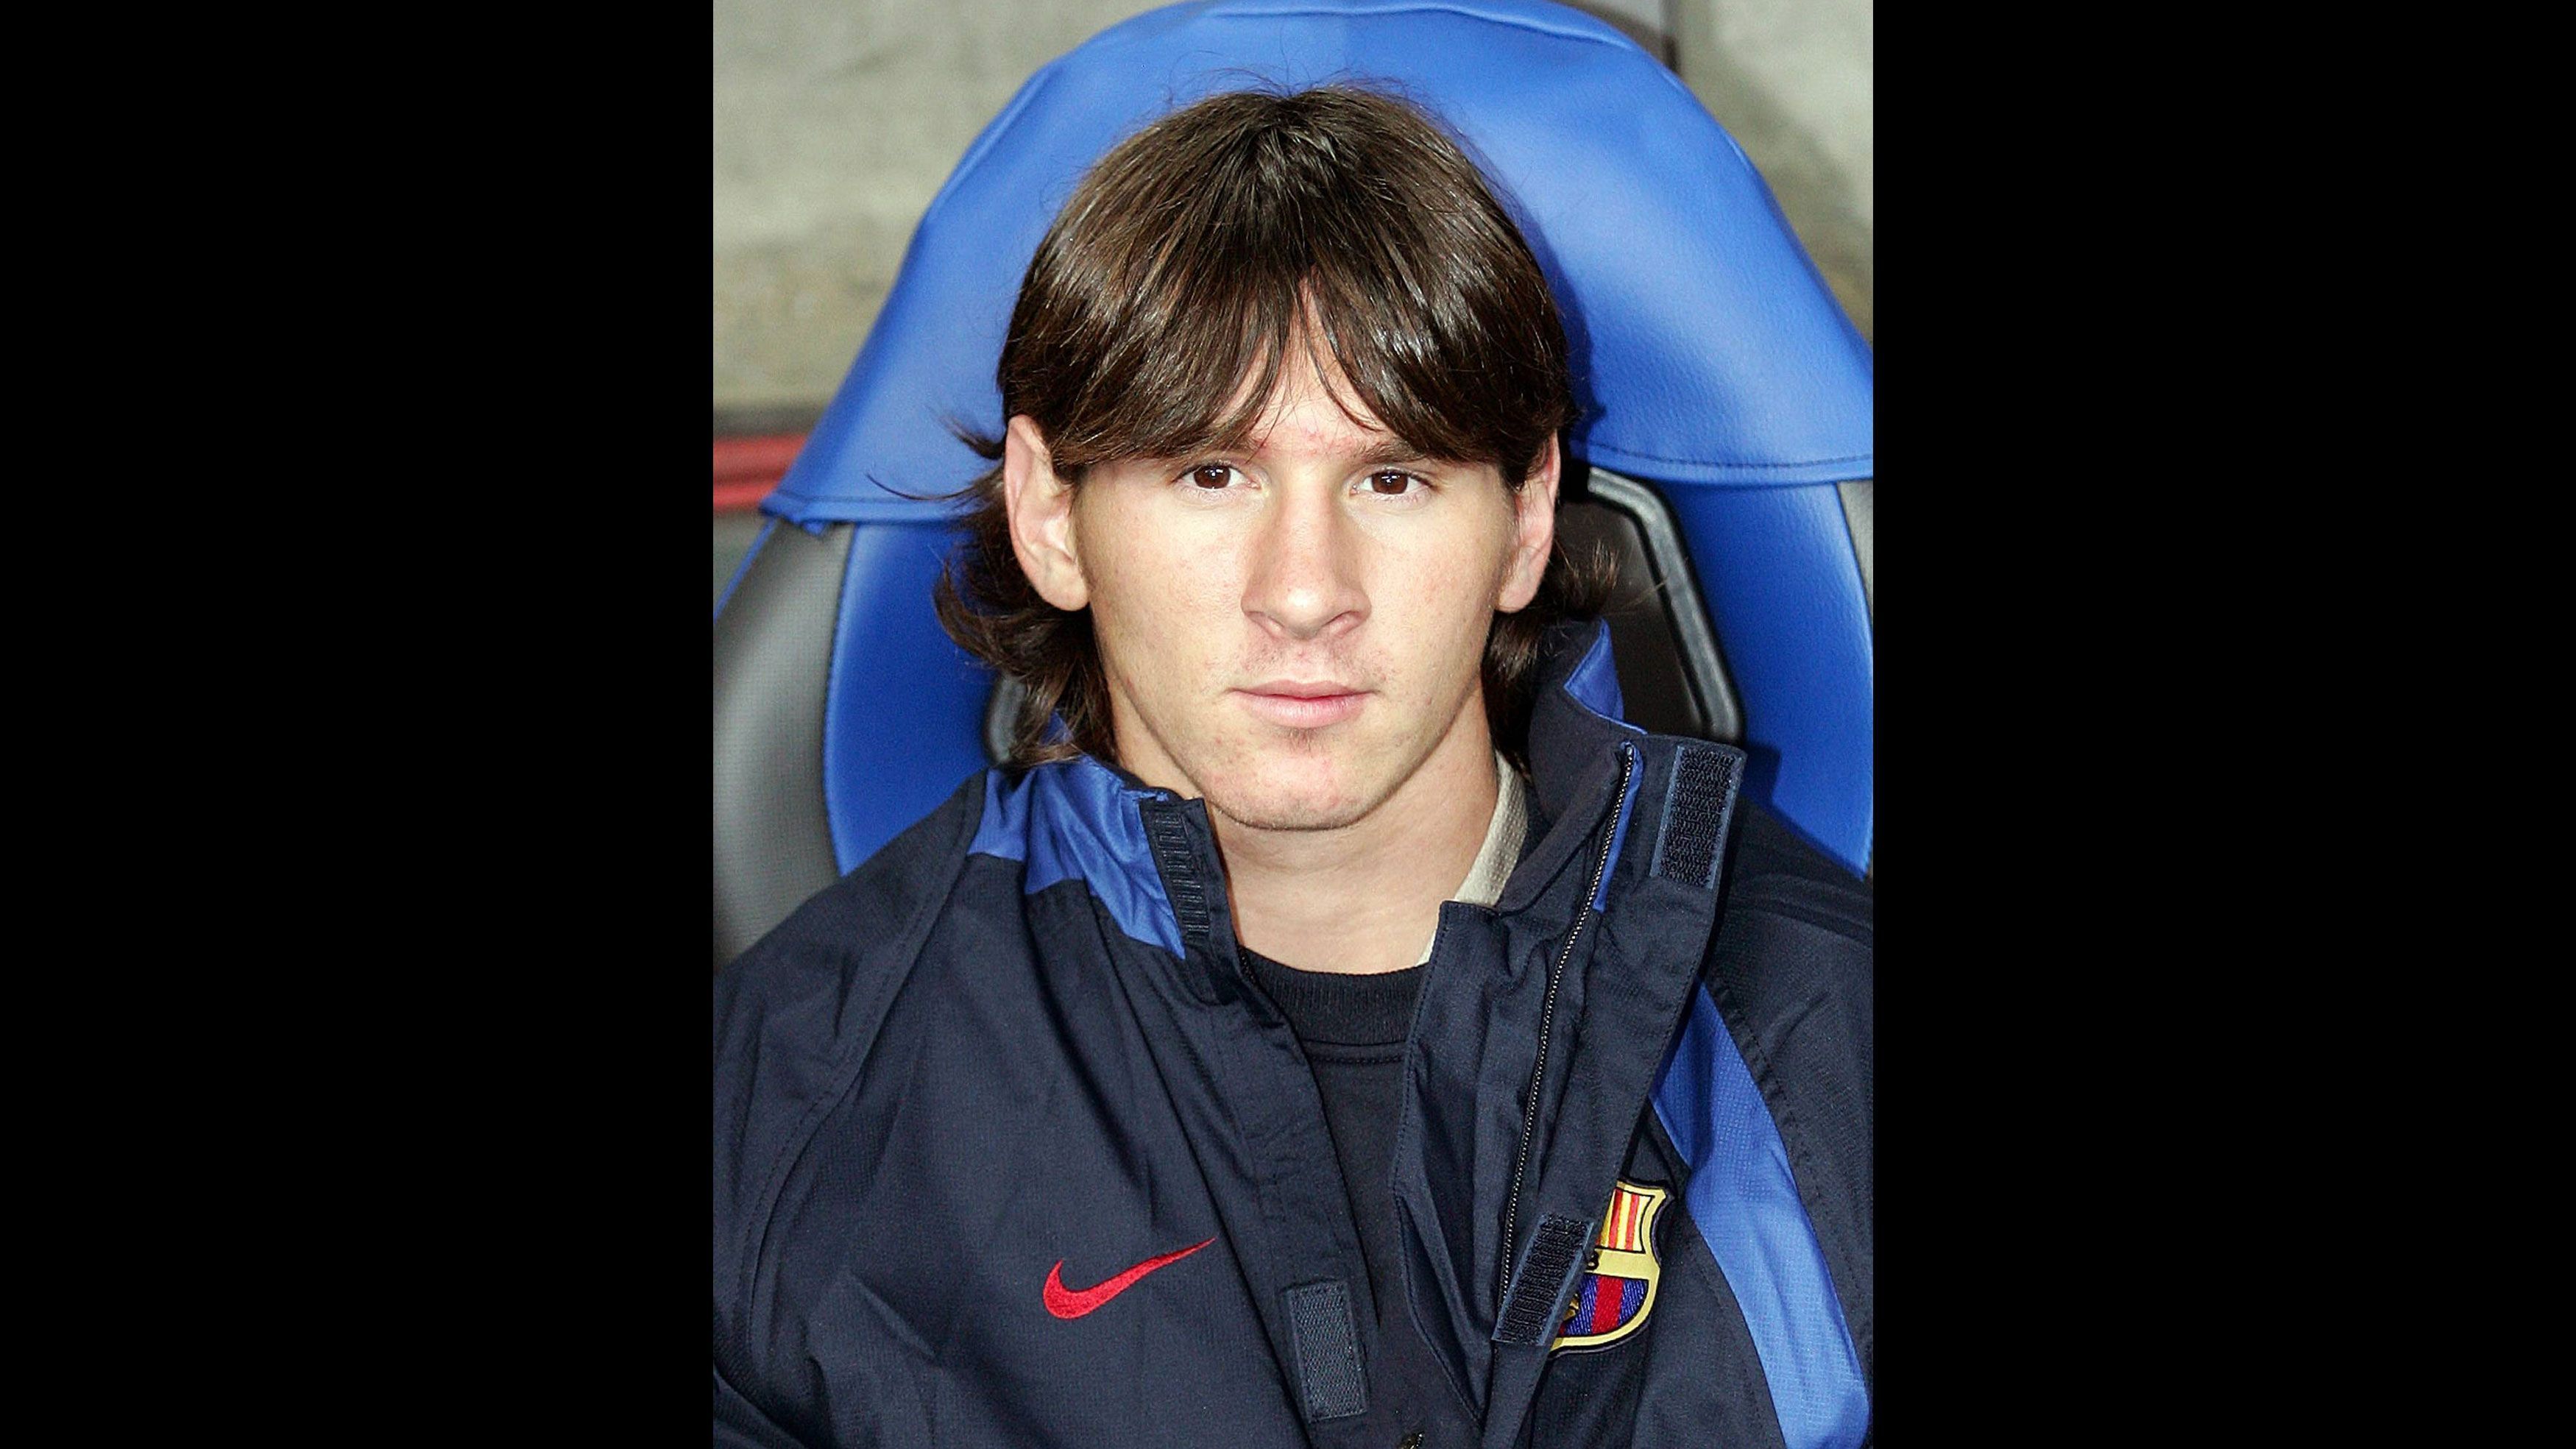 
                <strong>16. Oktober 2004: Debüt in LaLiga</strong><br>
                Im Spiel gegen Espanyol Barcelona kommt der 17-Jährige Messi in der 82. Minute für Deco aufs Feld. Es ist der Beginn einer absolut beispiellosen Karriere.
              